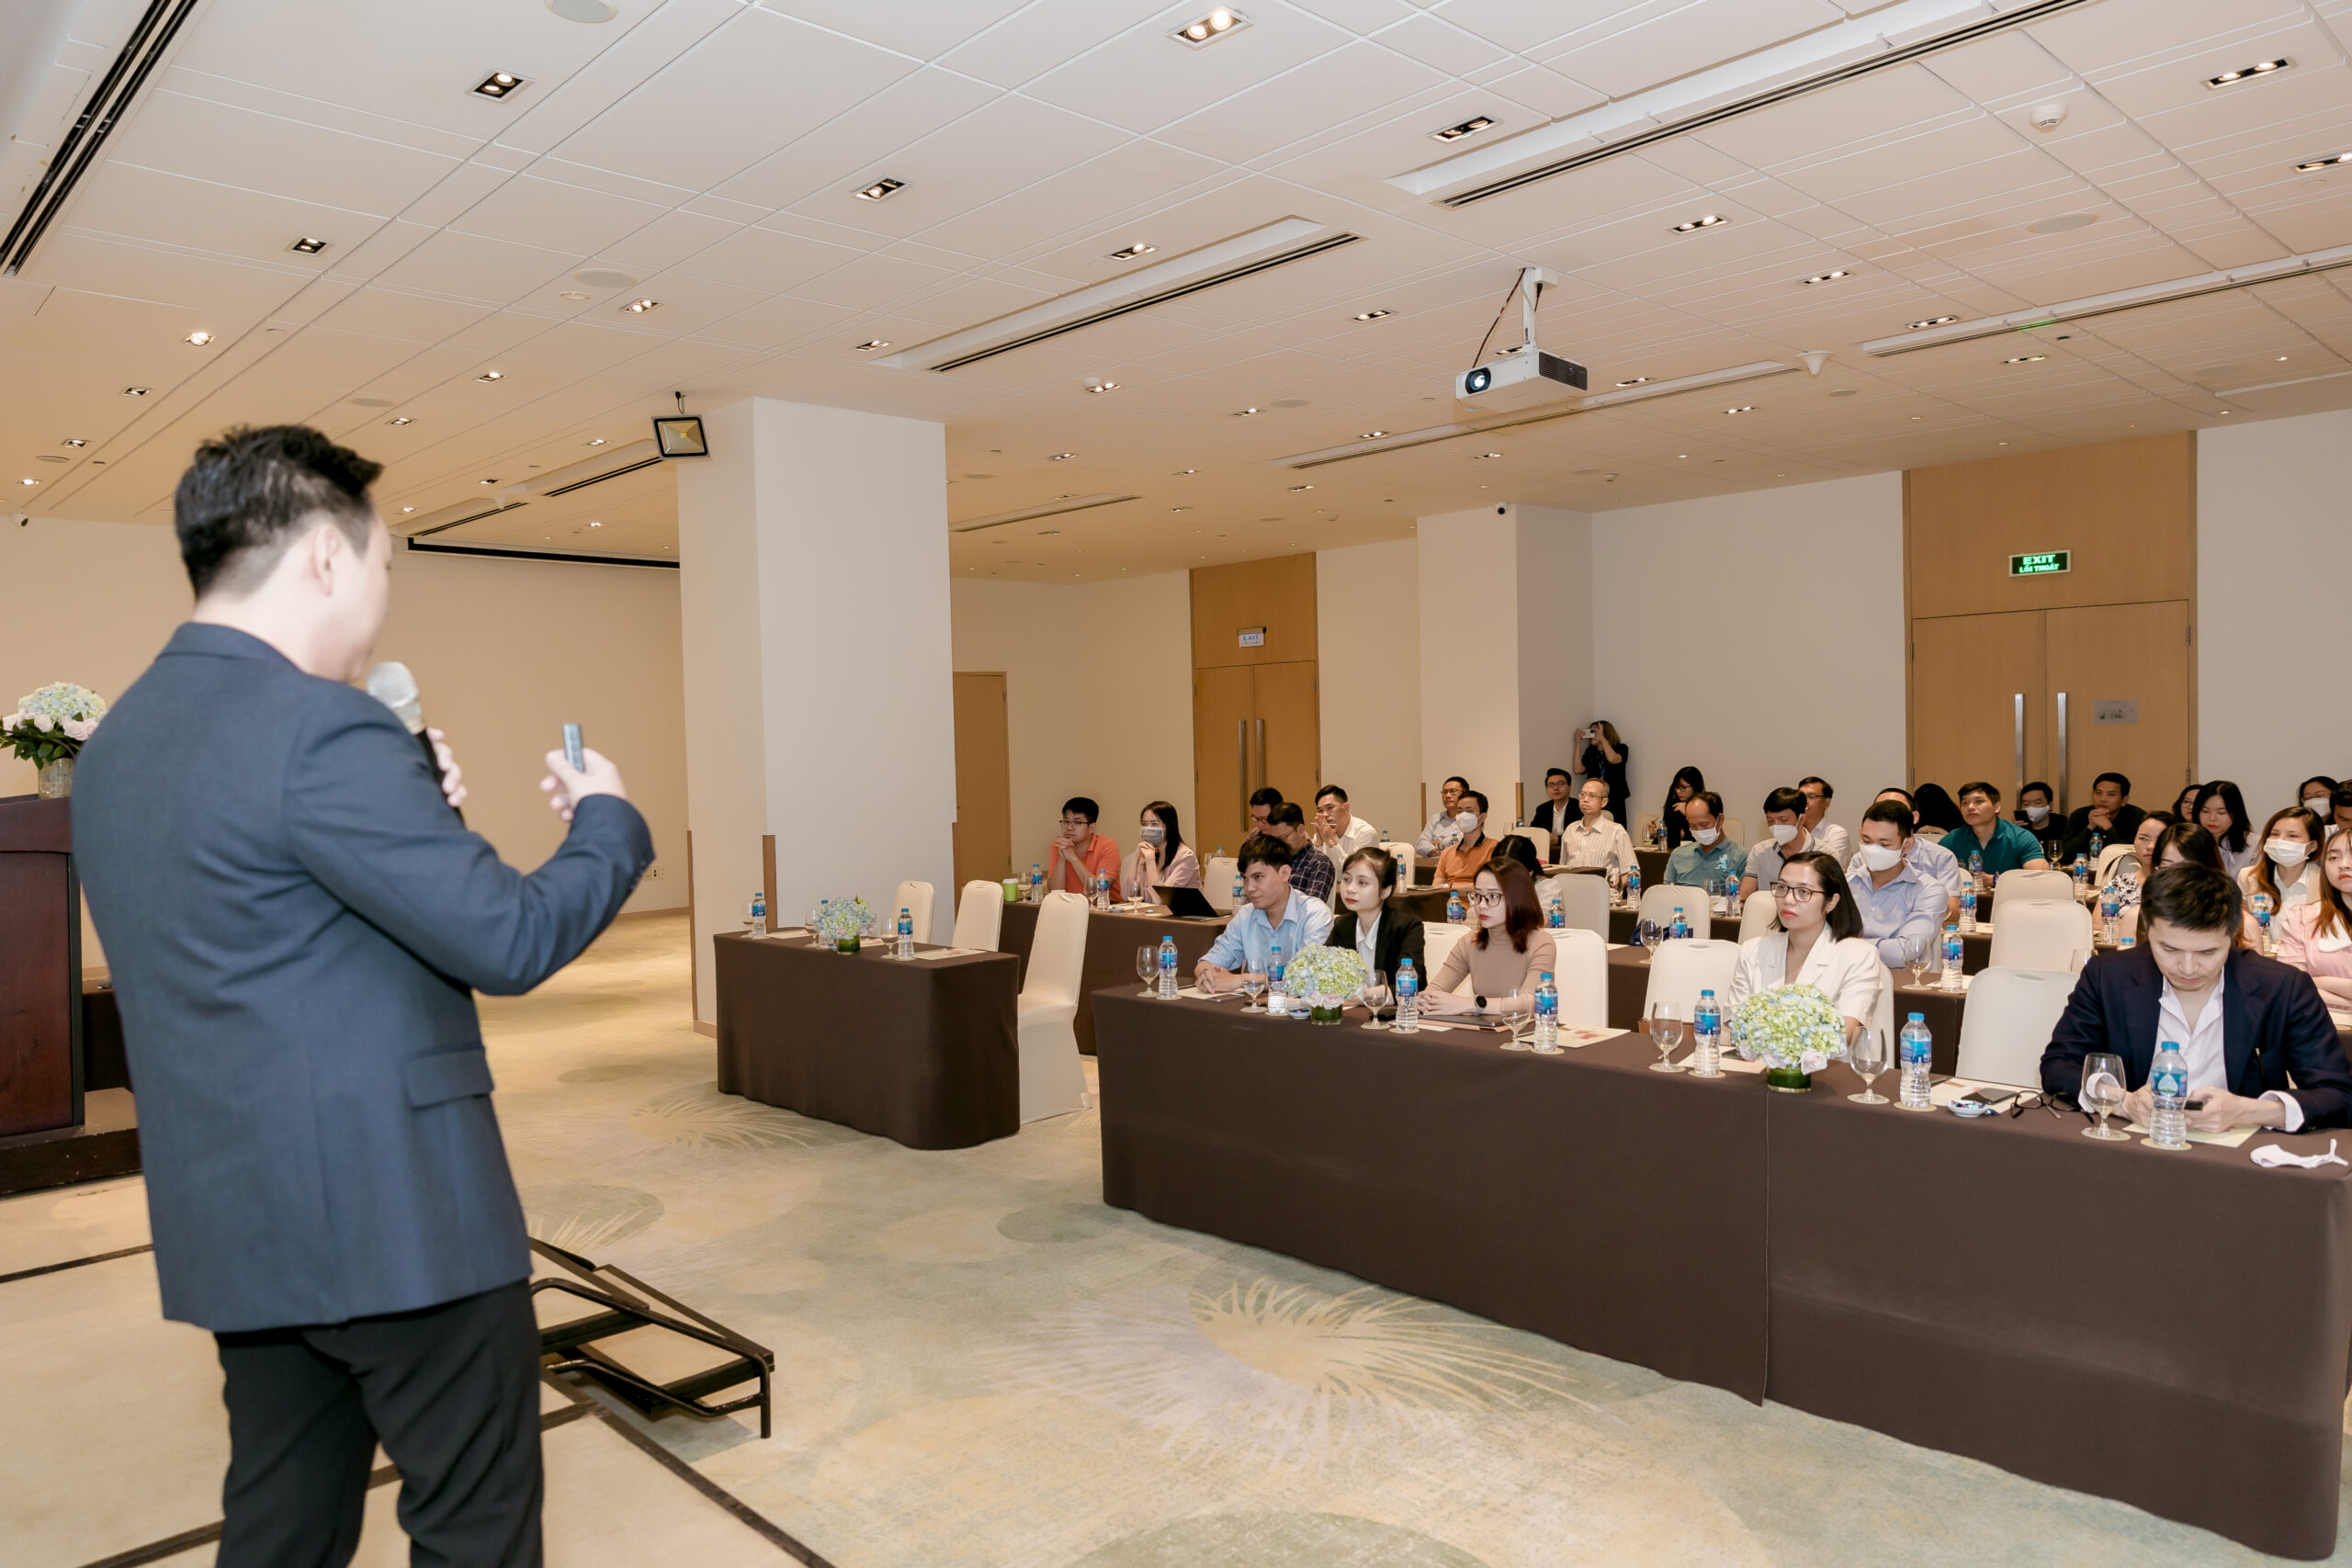 Gimasys cùng Salesforce tổ chức thành công sự kiện "Số hoá dịch vụ khách hàng với sự can thiệp của AI" tại TP. Hồ Chí Minh